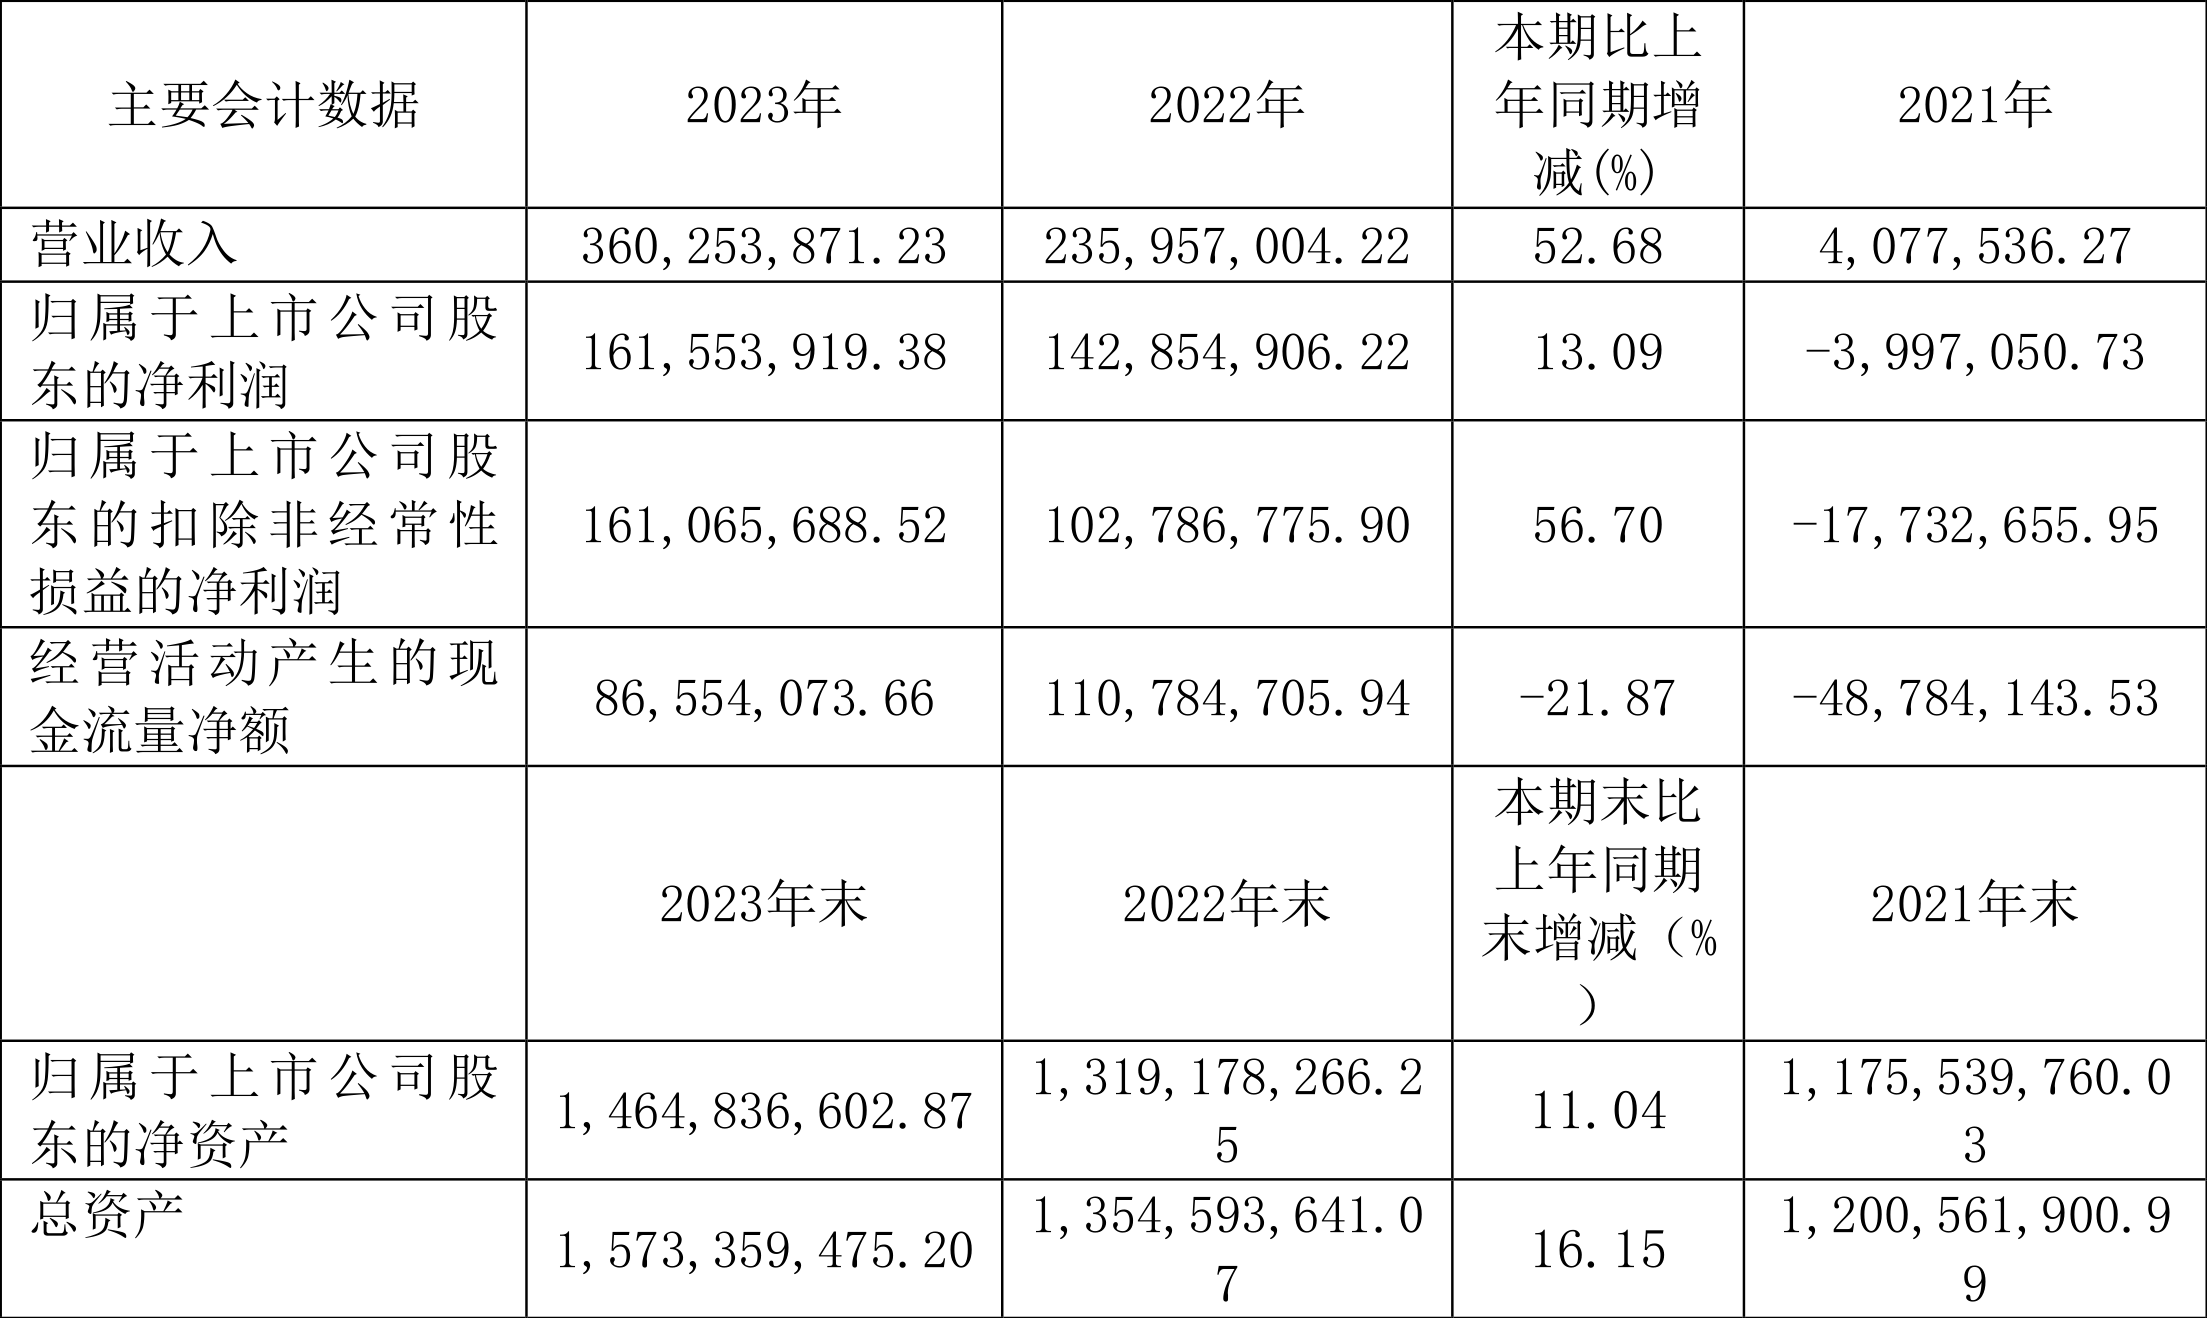 上海谊众：2023 年净利润同比增长 13.09% 拟 10 转 3 股派 3.1 元 - 第 2 张图片 - 小城生活